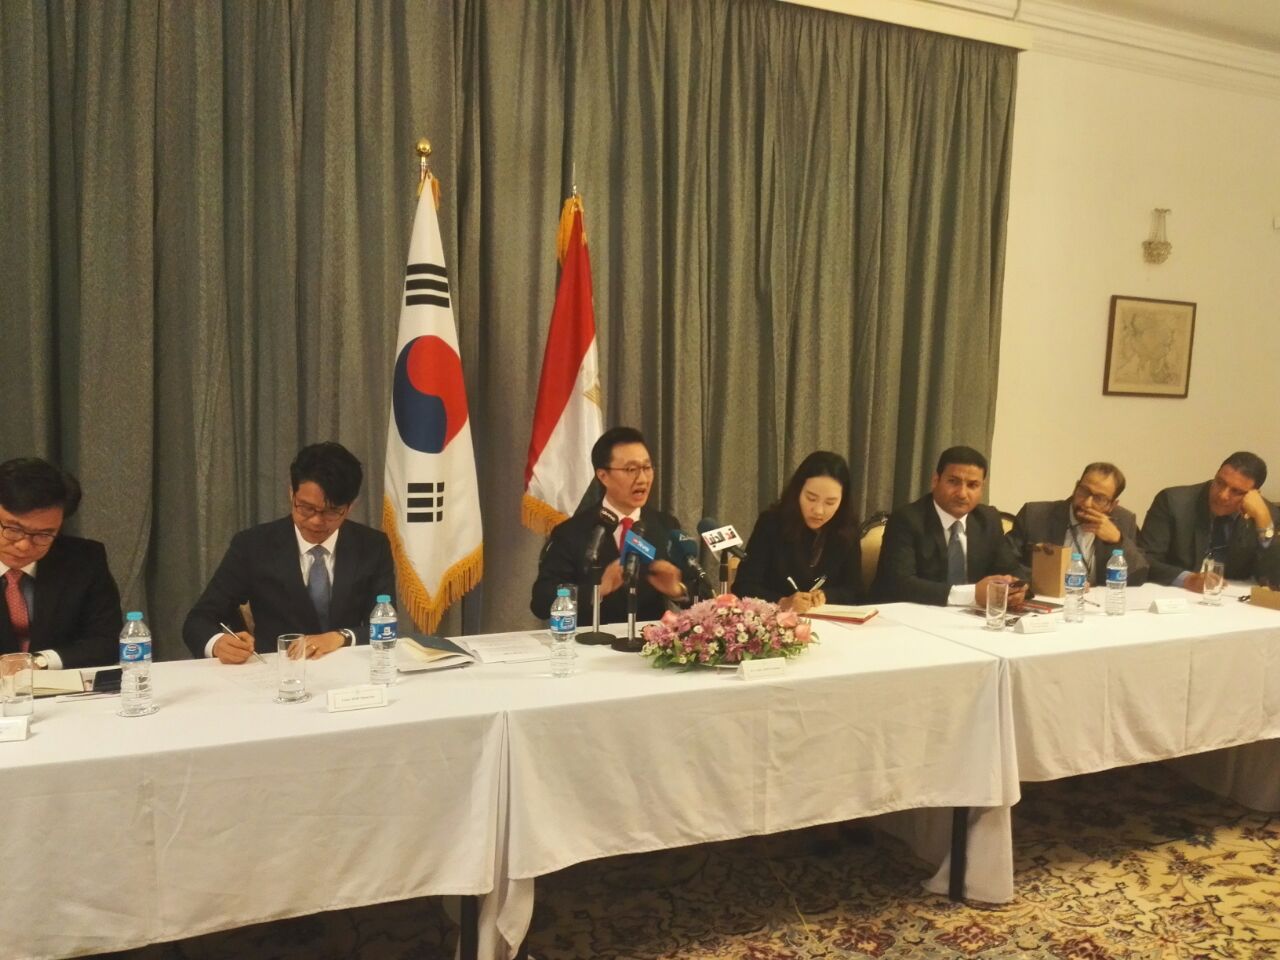 يون يو شيول سفير كوريا الجنوبية خلال كلمته